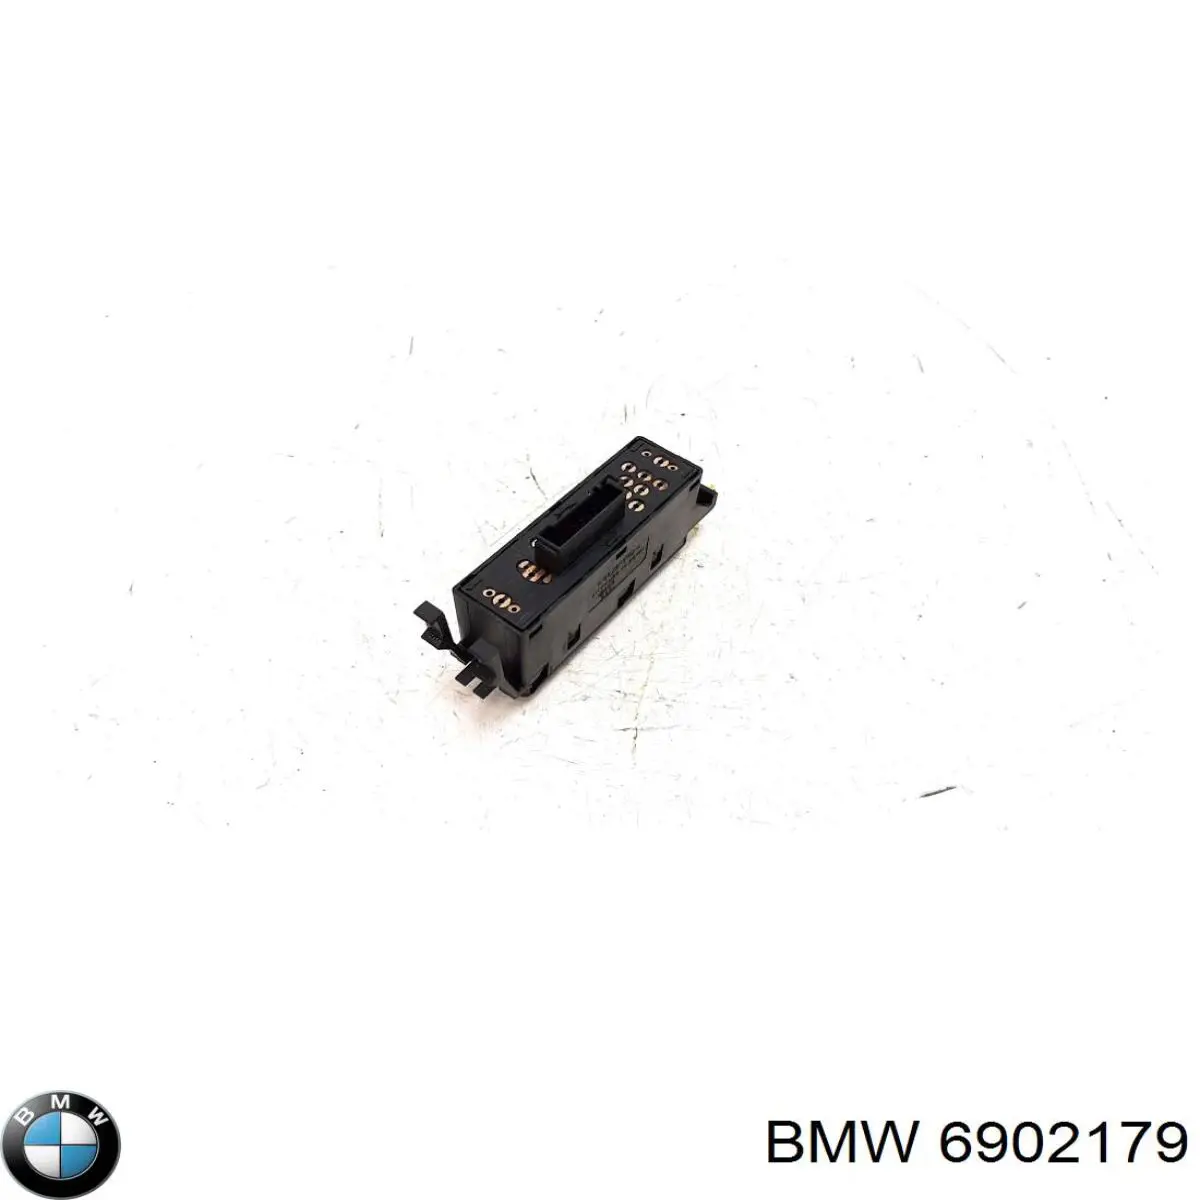 Botón de encendido, motor eléctrico, elevalunas, puerta delantera derecha para BMW 3 (E46)